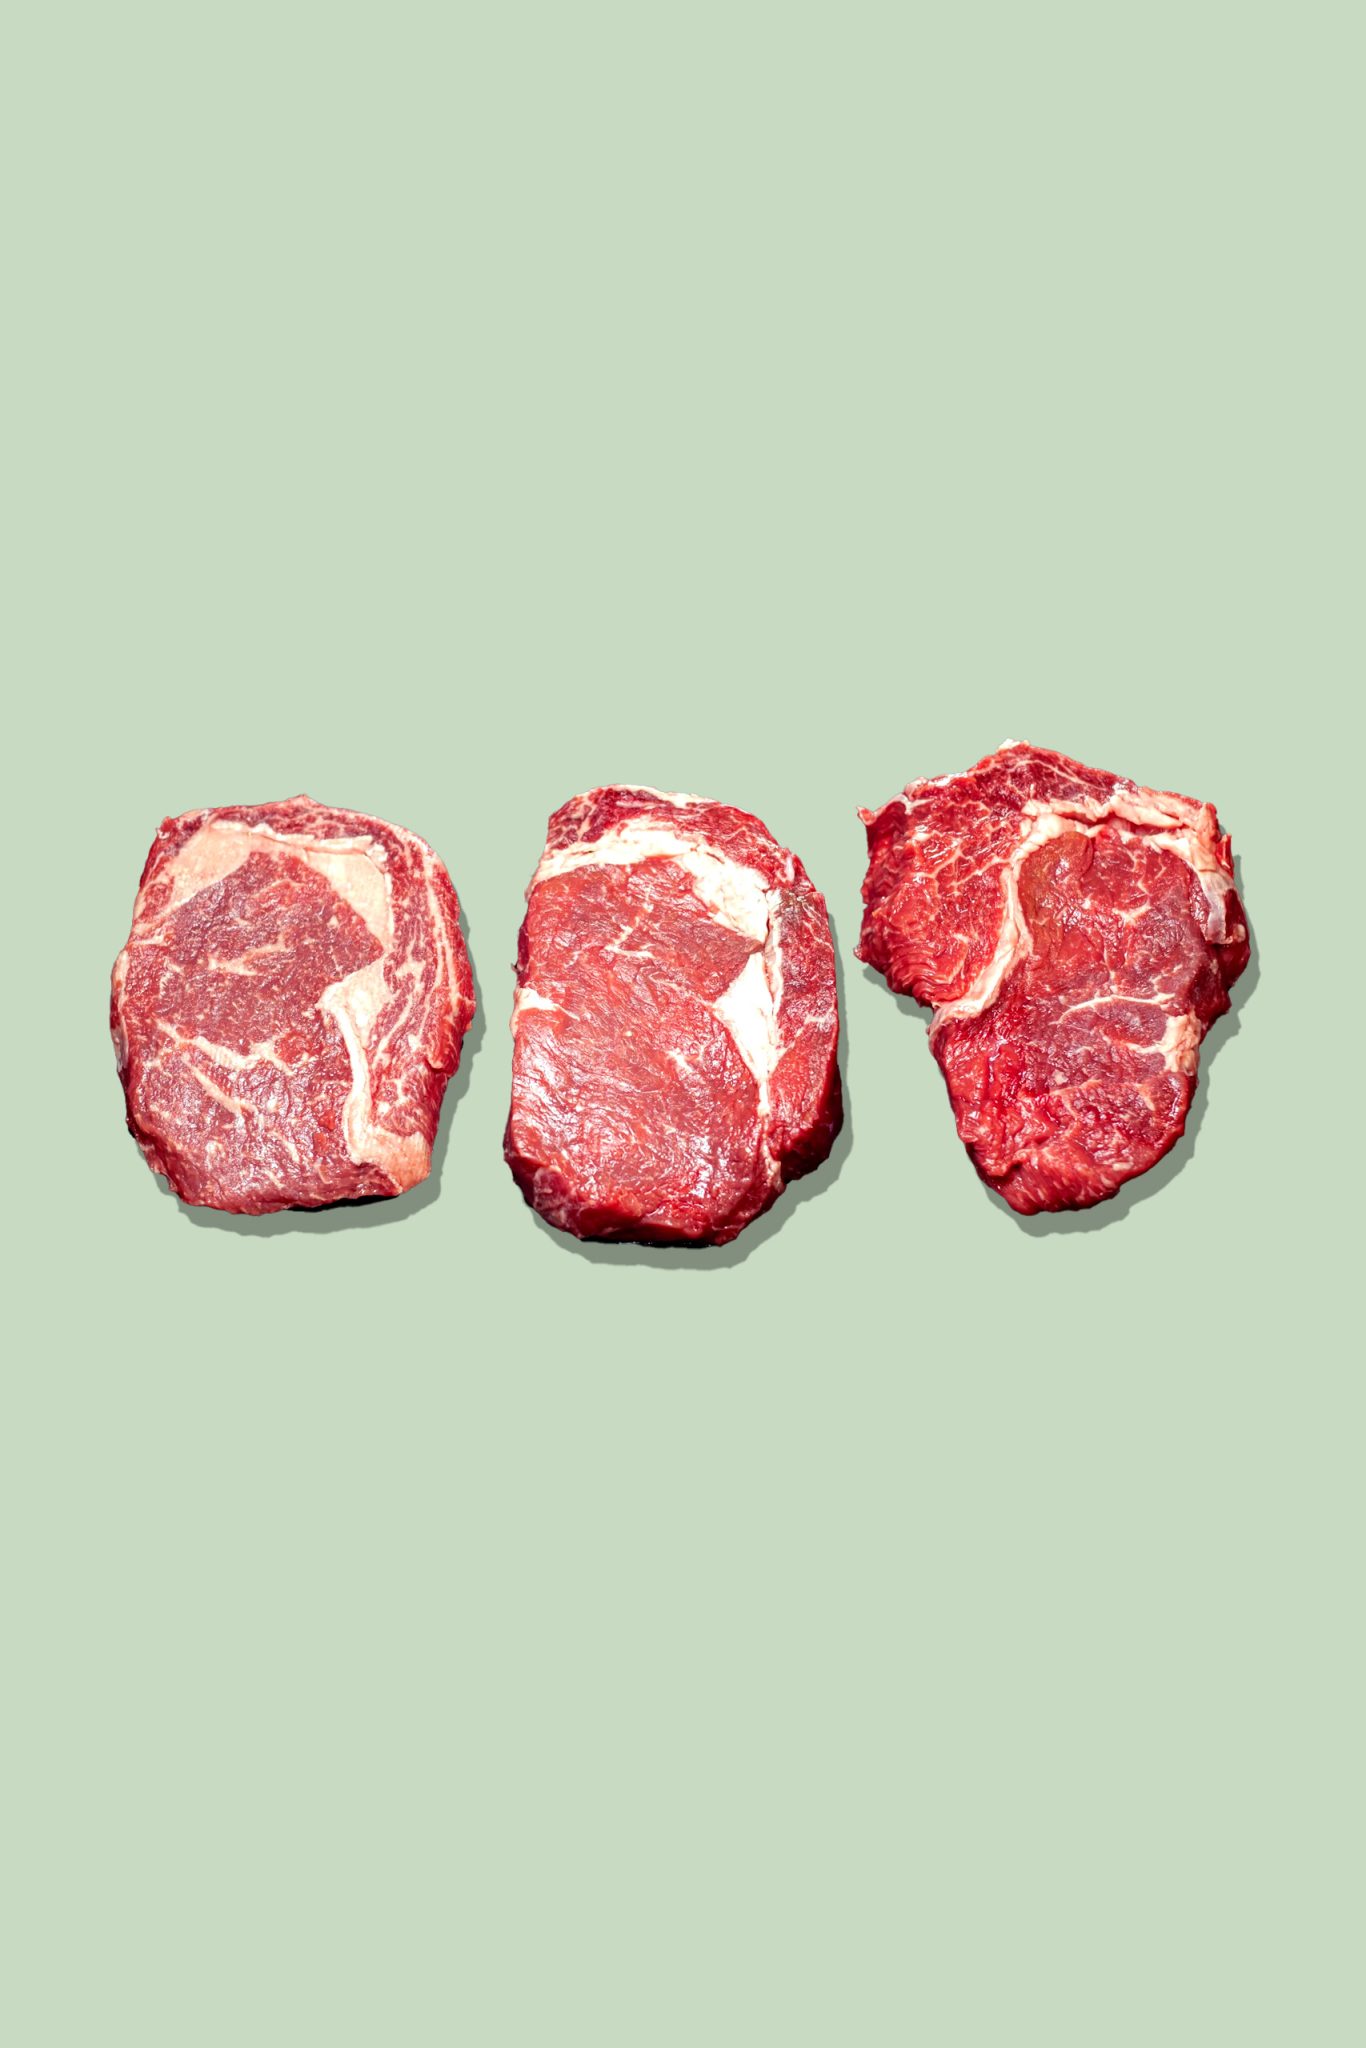 Steak for home - Probierpaket rib-eye-steaks